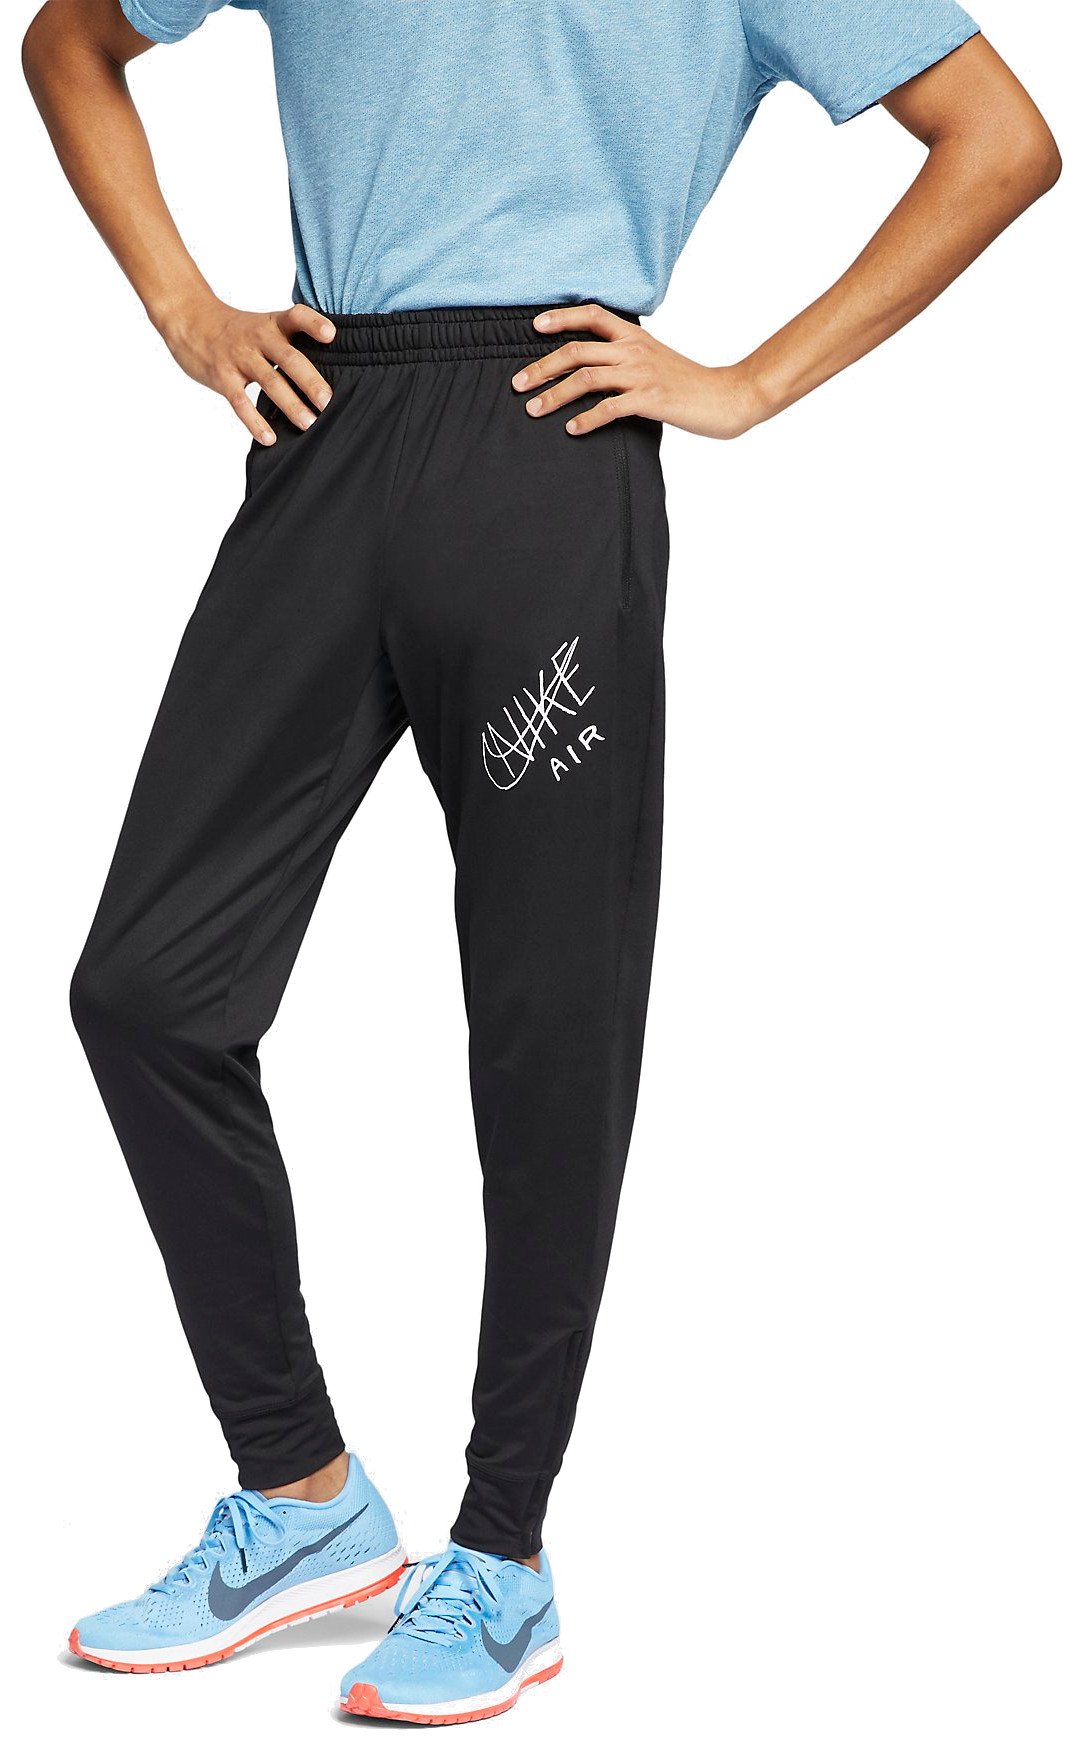 Pánské běžecké kalhoty Nike Essential Knit